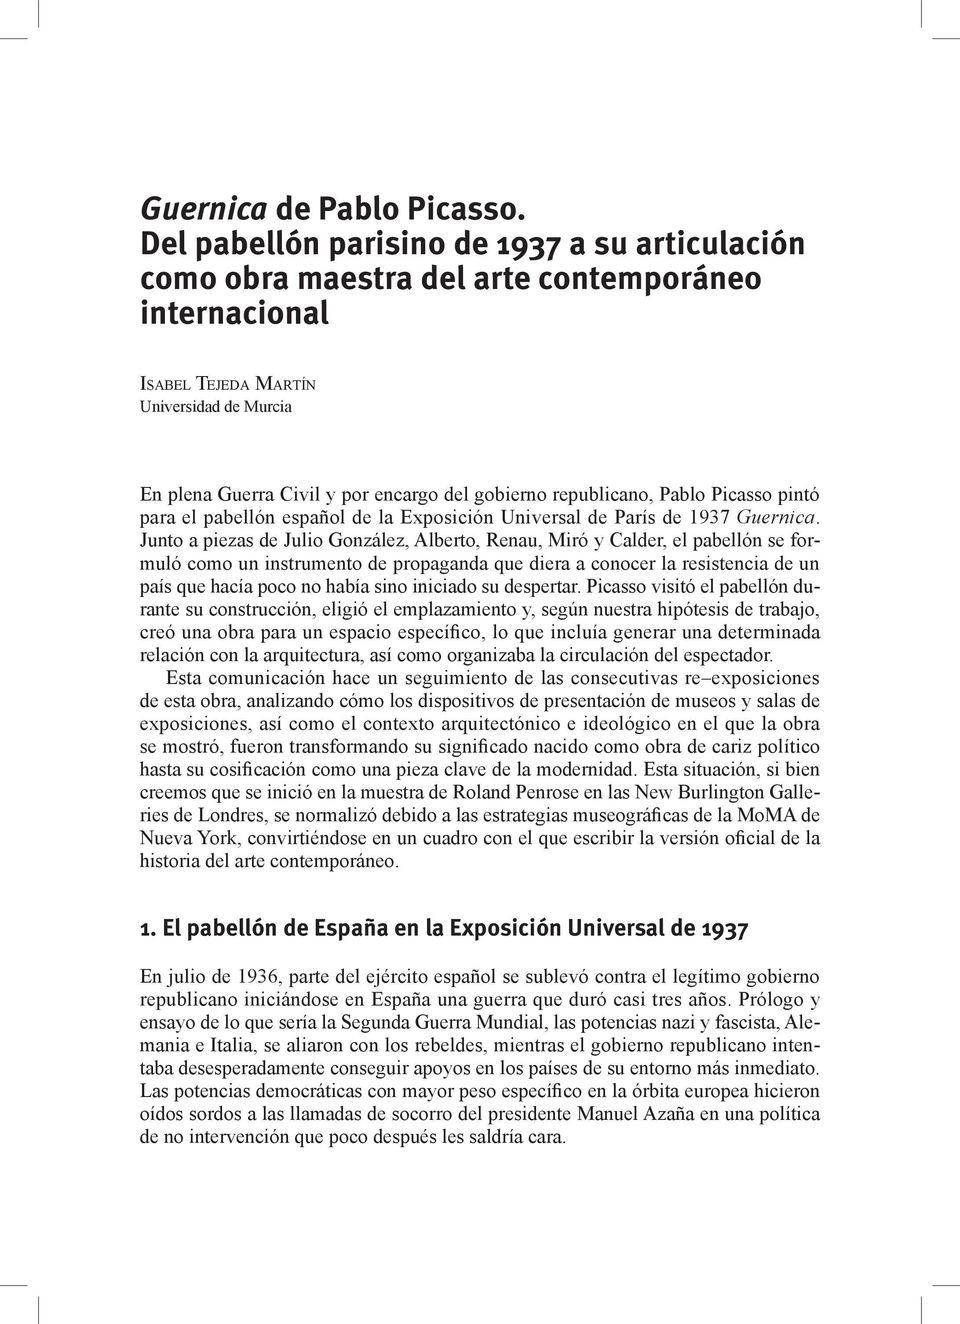 republicano, Pablo Picasso pintó para el pabellón español de la Exposición Universal de París de 1937 Guernica.